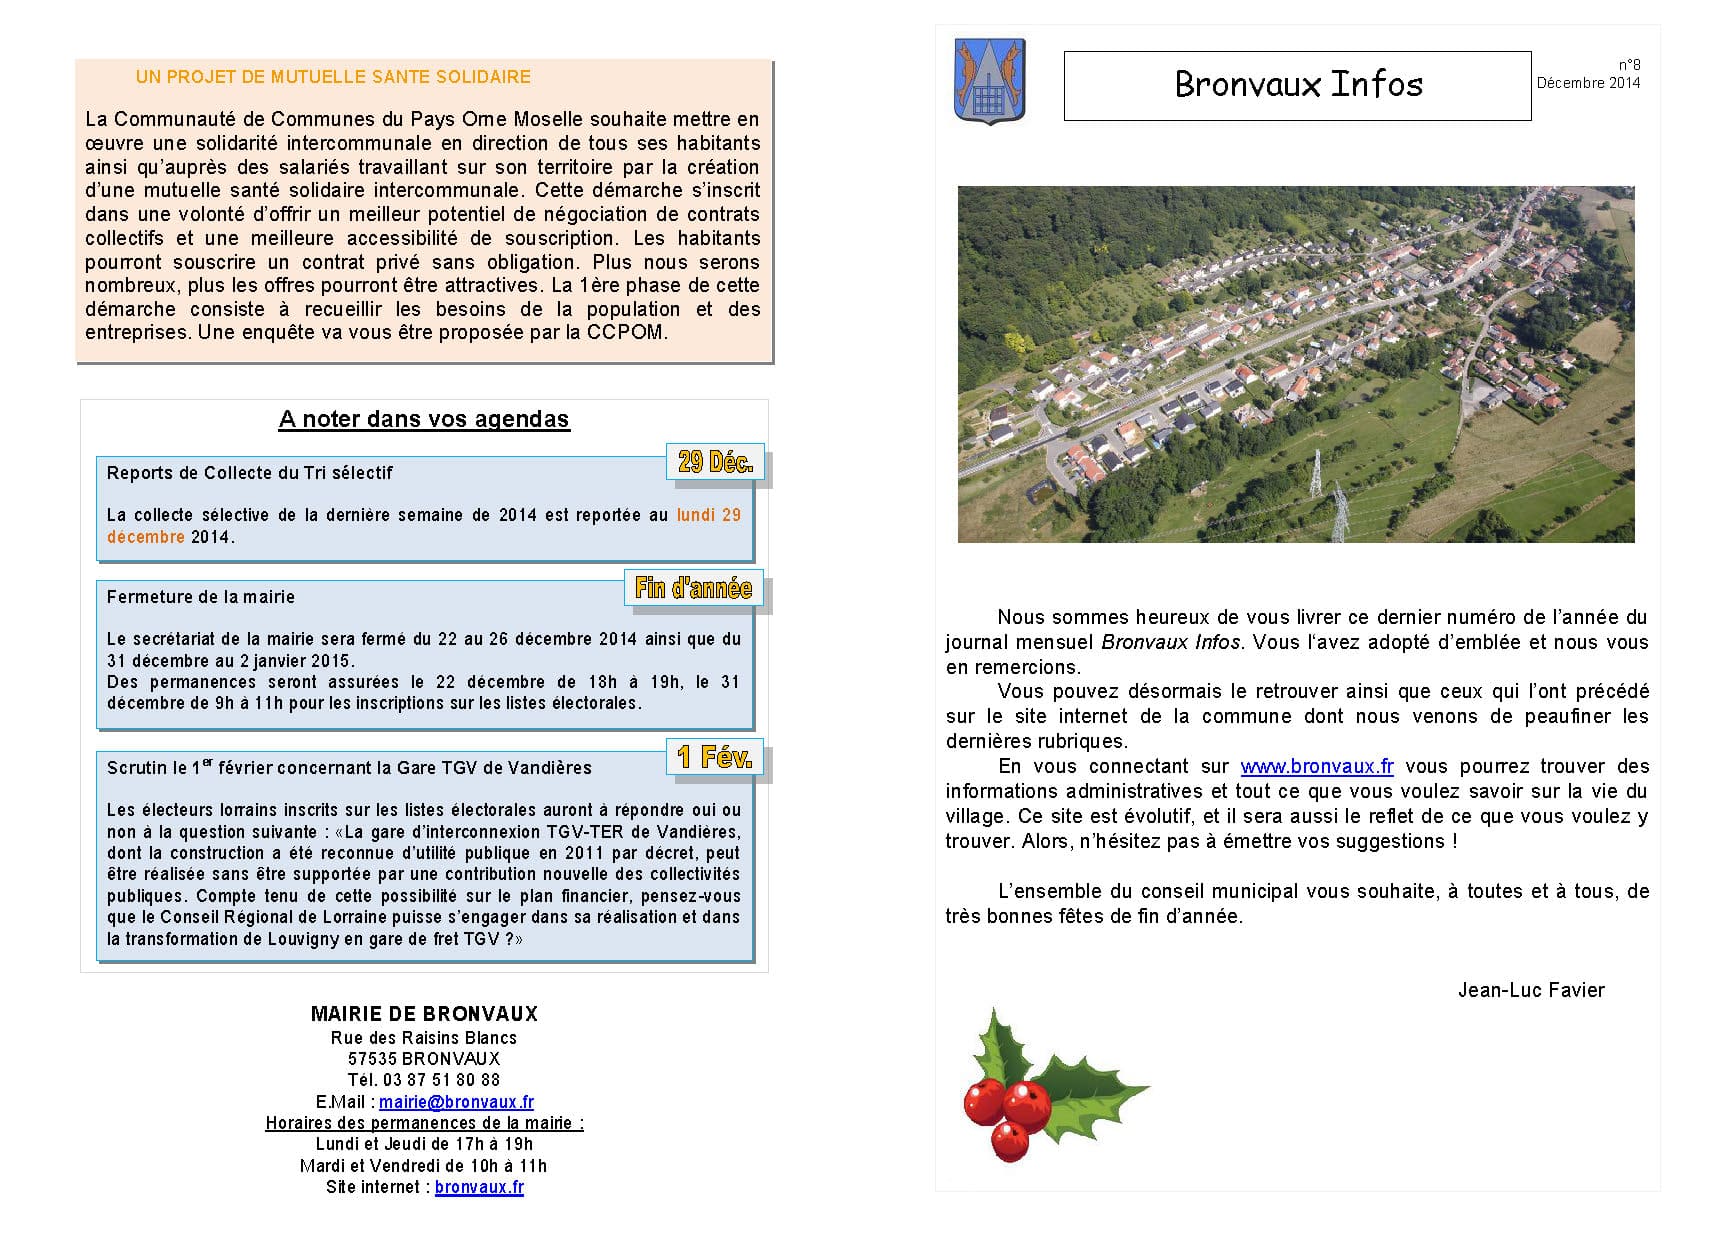 Bronvaux Infos décembre 2014